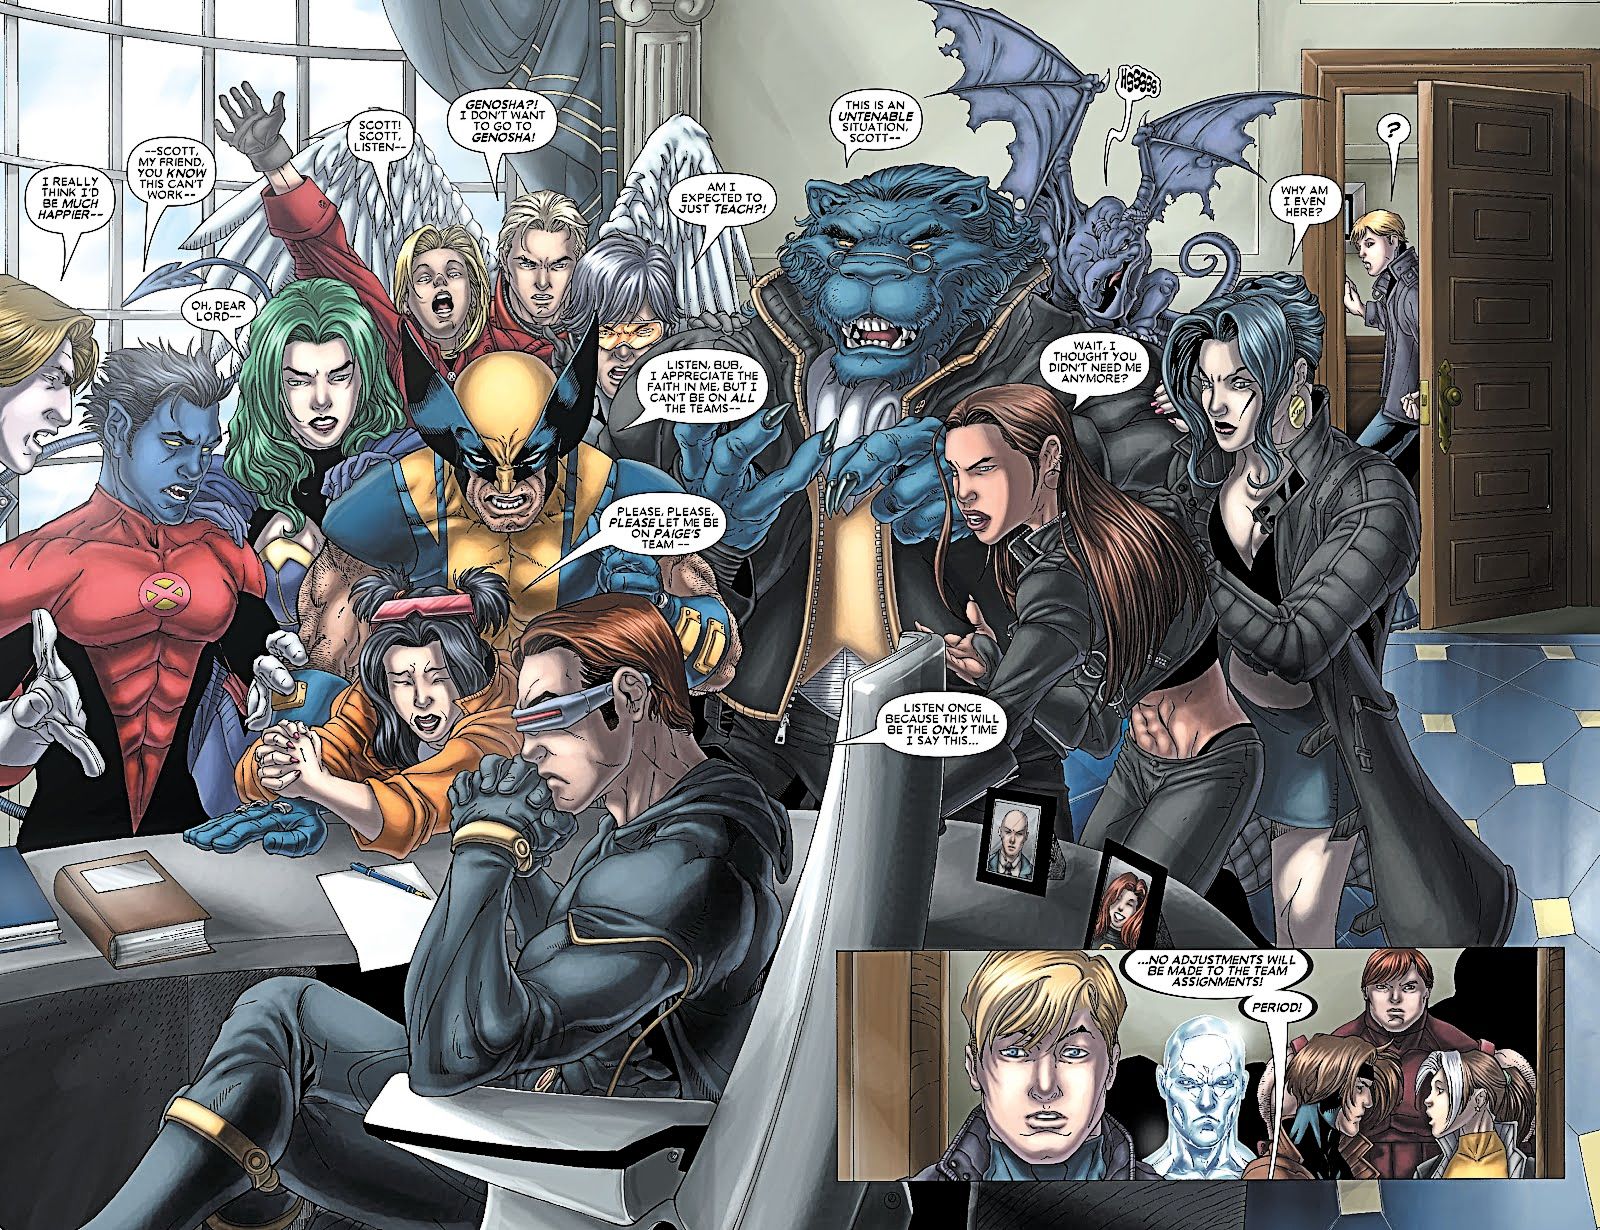 X-Men 157, diretor Scott Summers enfrenta um dilúvio de reclamações sobre atribuições de equipe